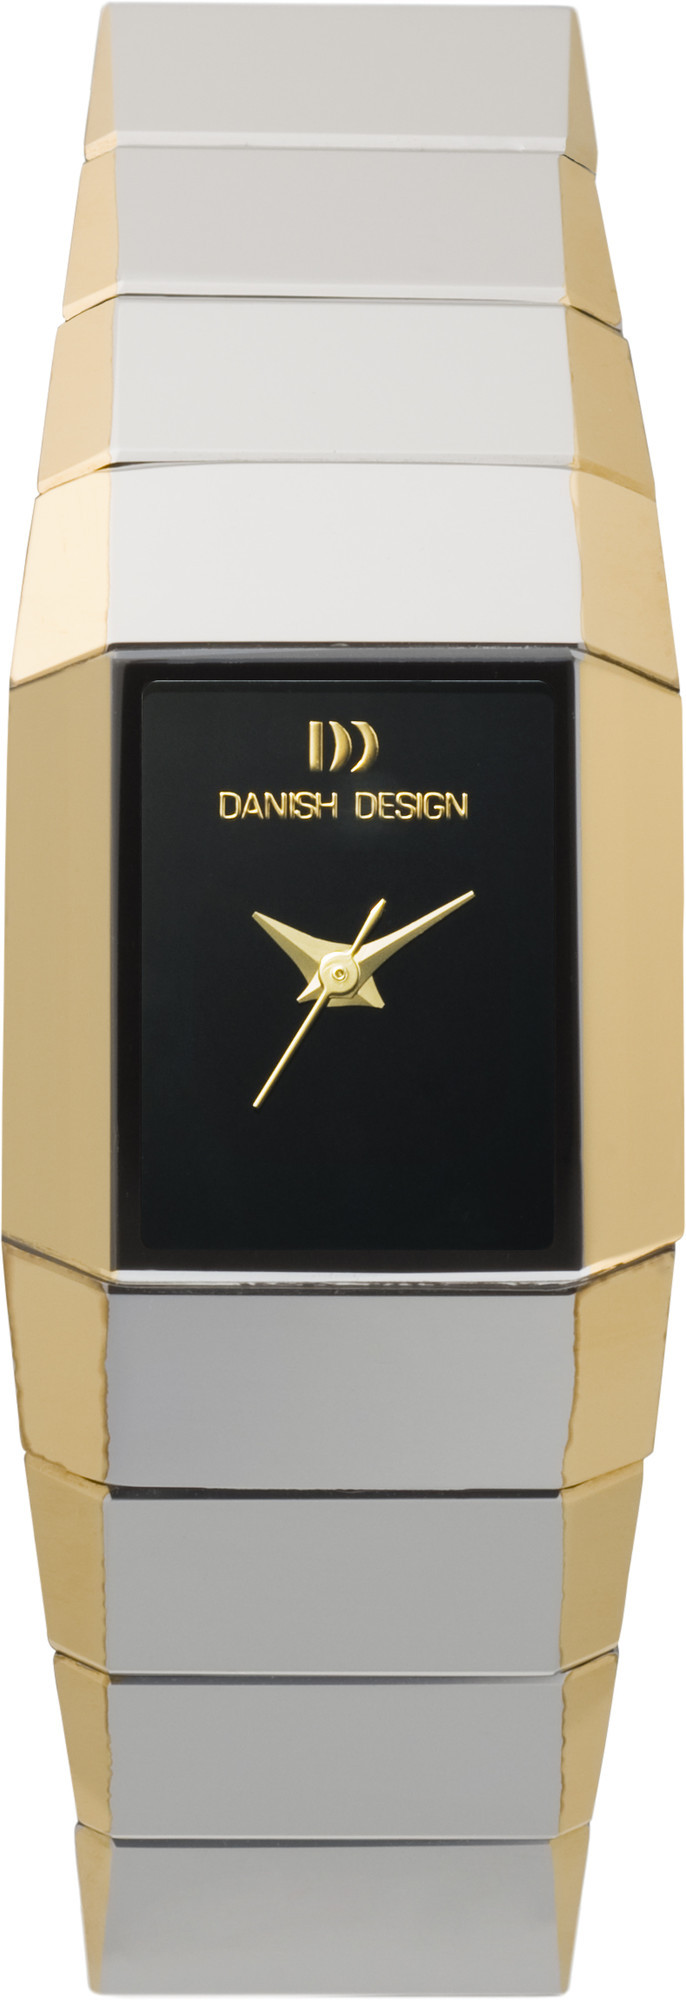 Danish Design Horloge  Tungsten IV65Q805 1